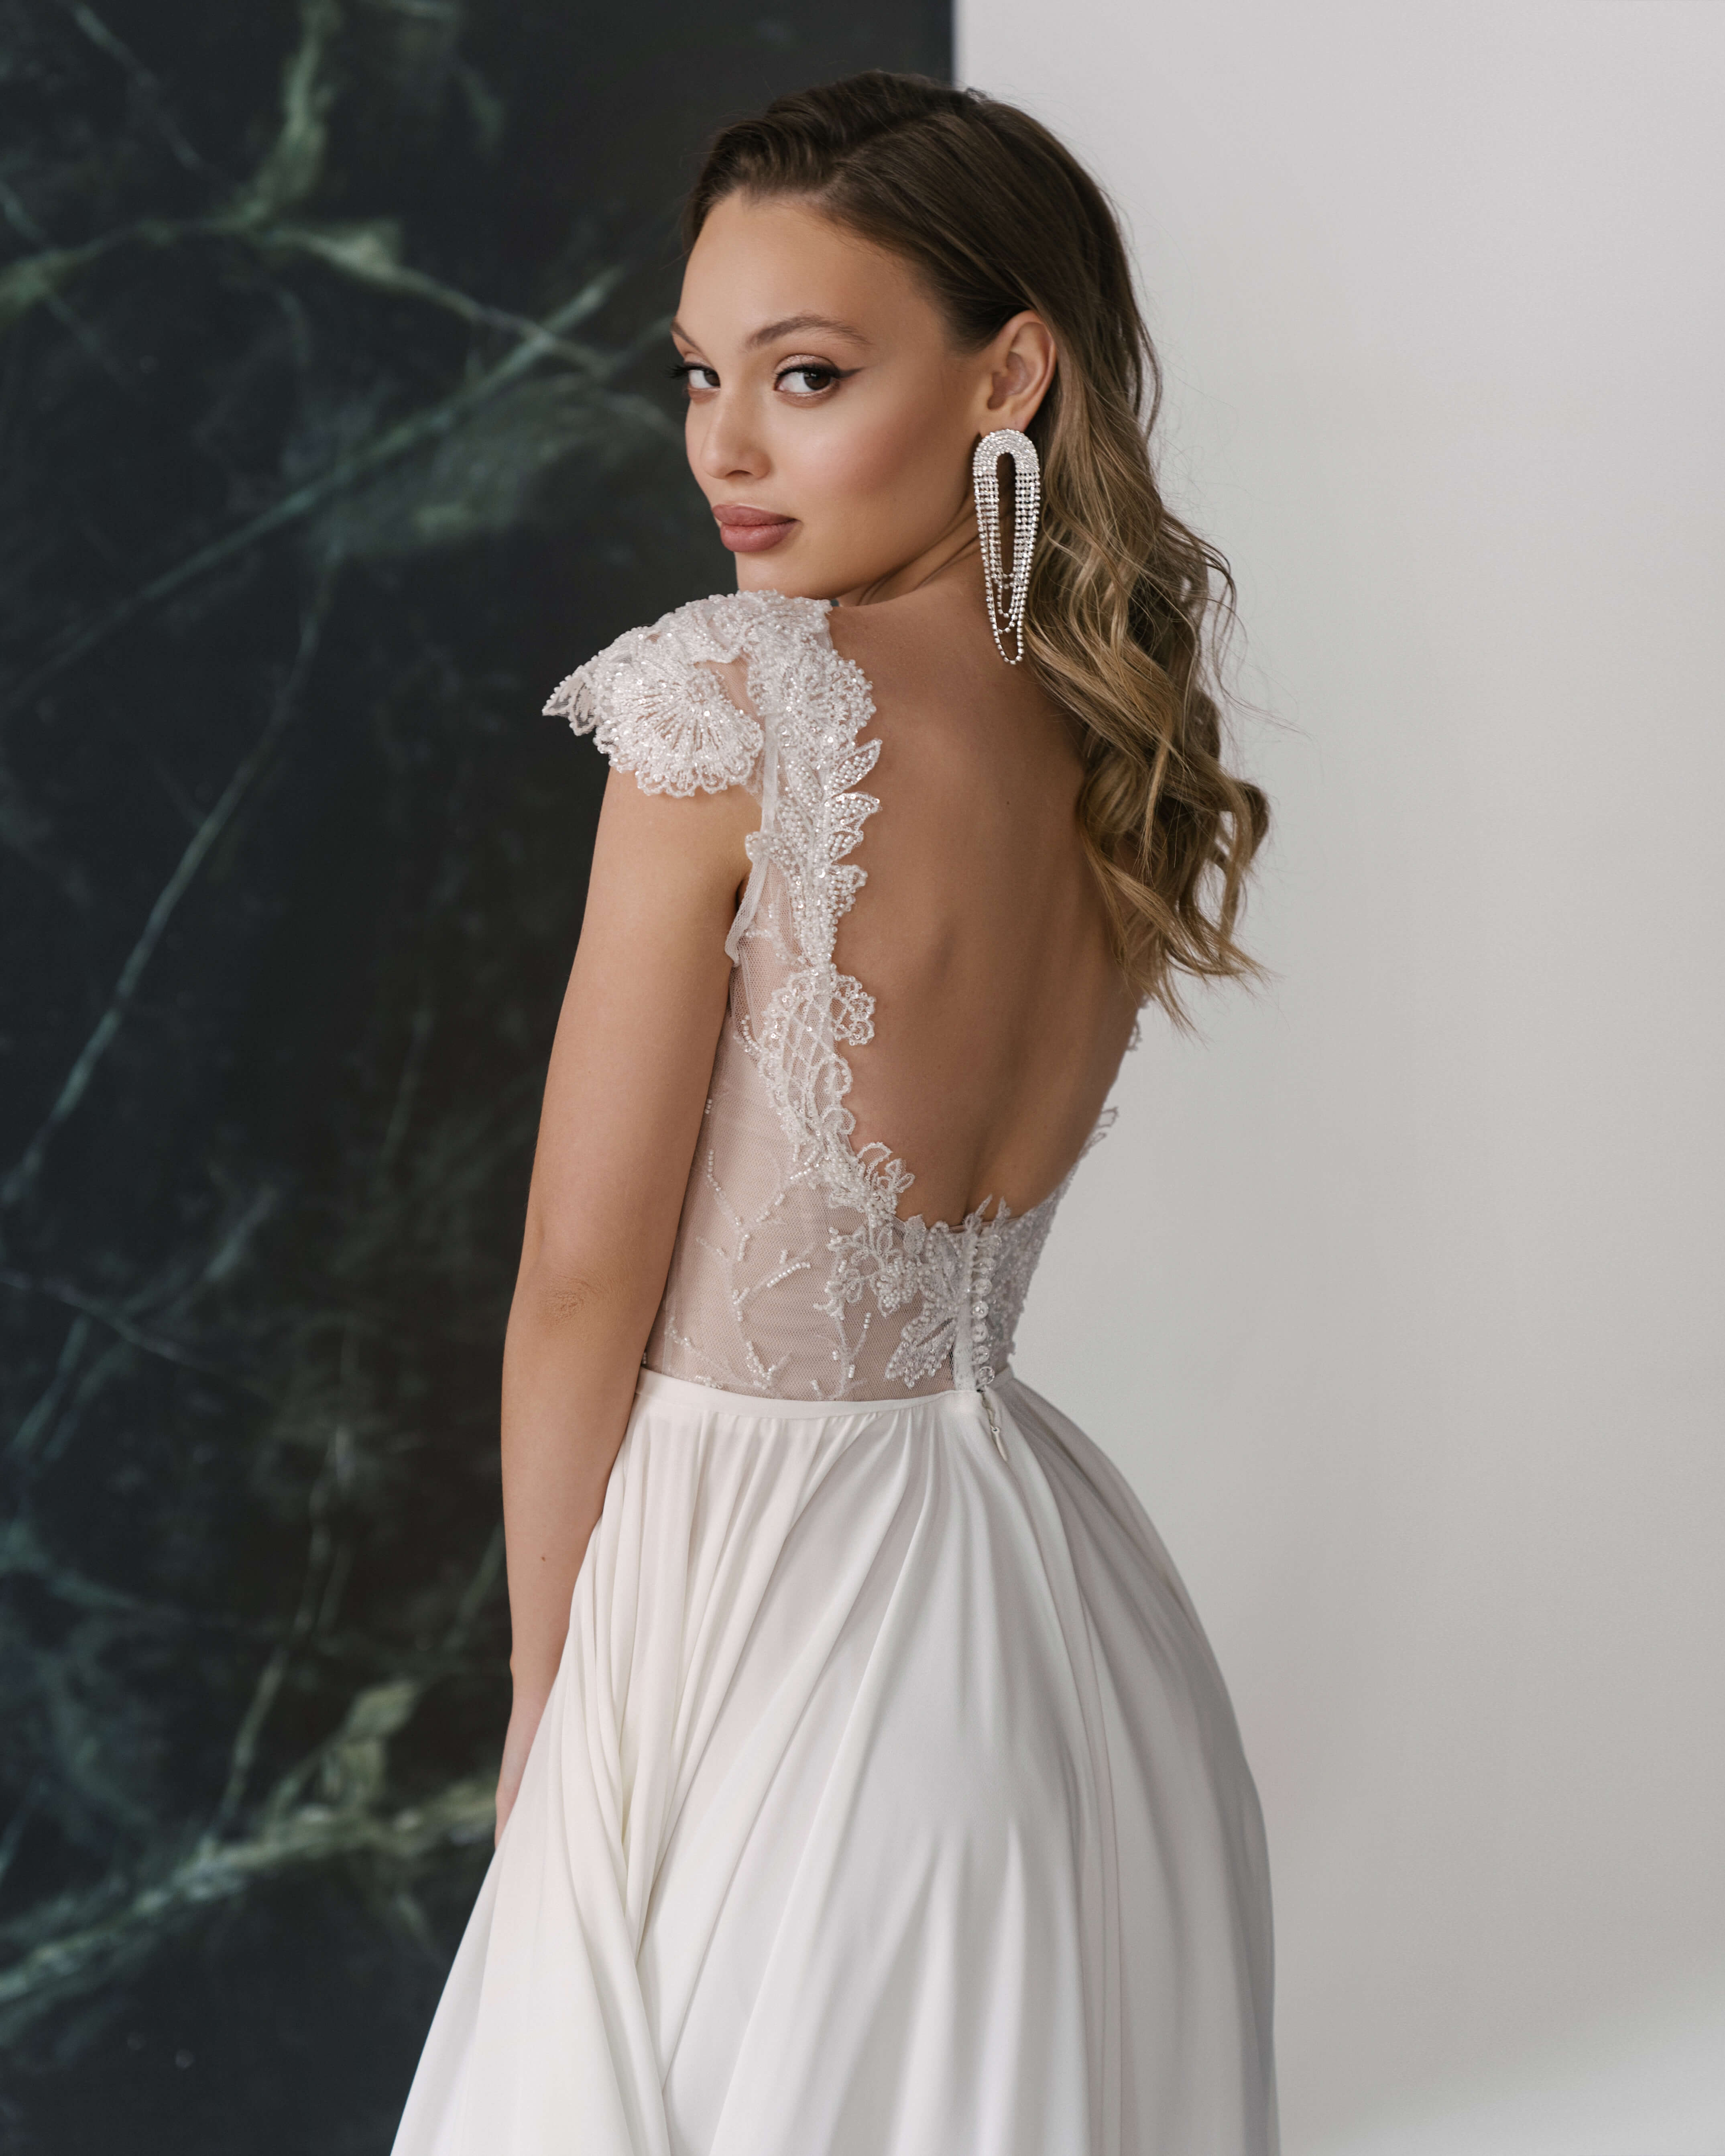 Купить свадебное платье «Стейша» Рара Авис из коллекции Гелекси 2022 года в салоне «Мэри Трюфель»